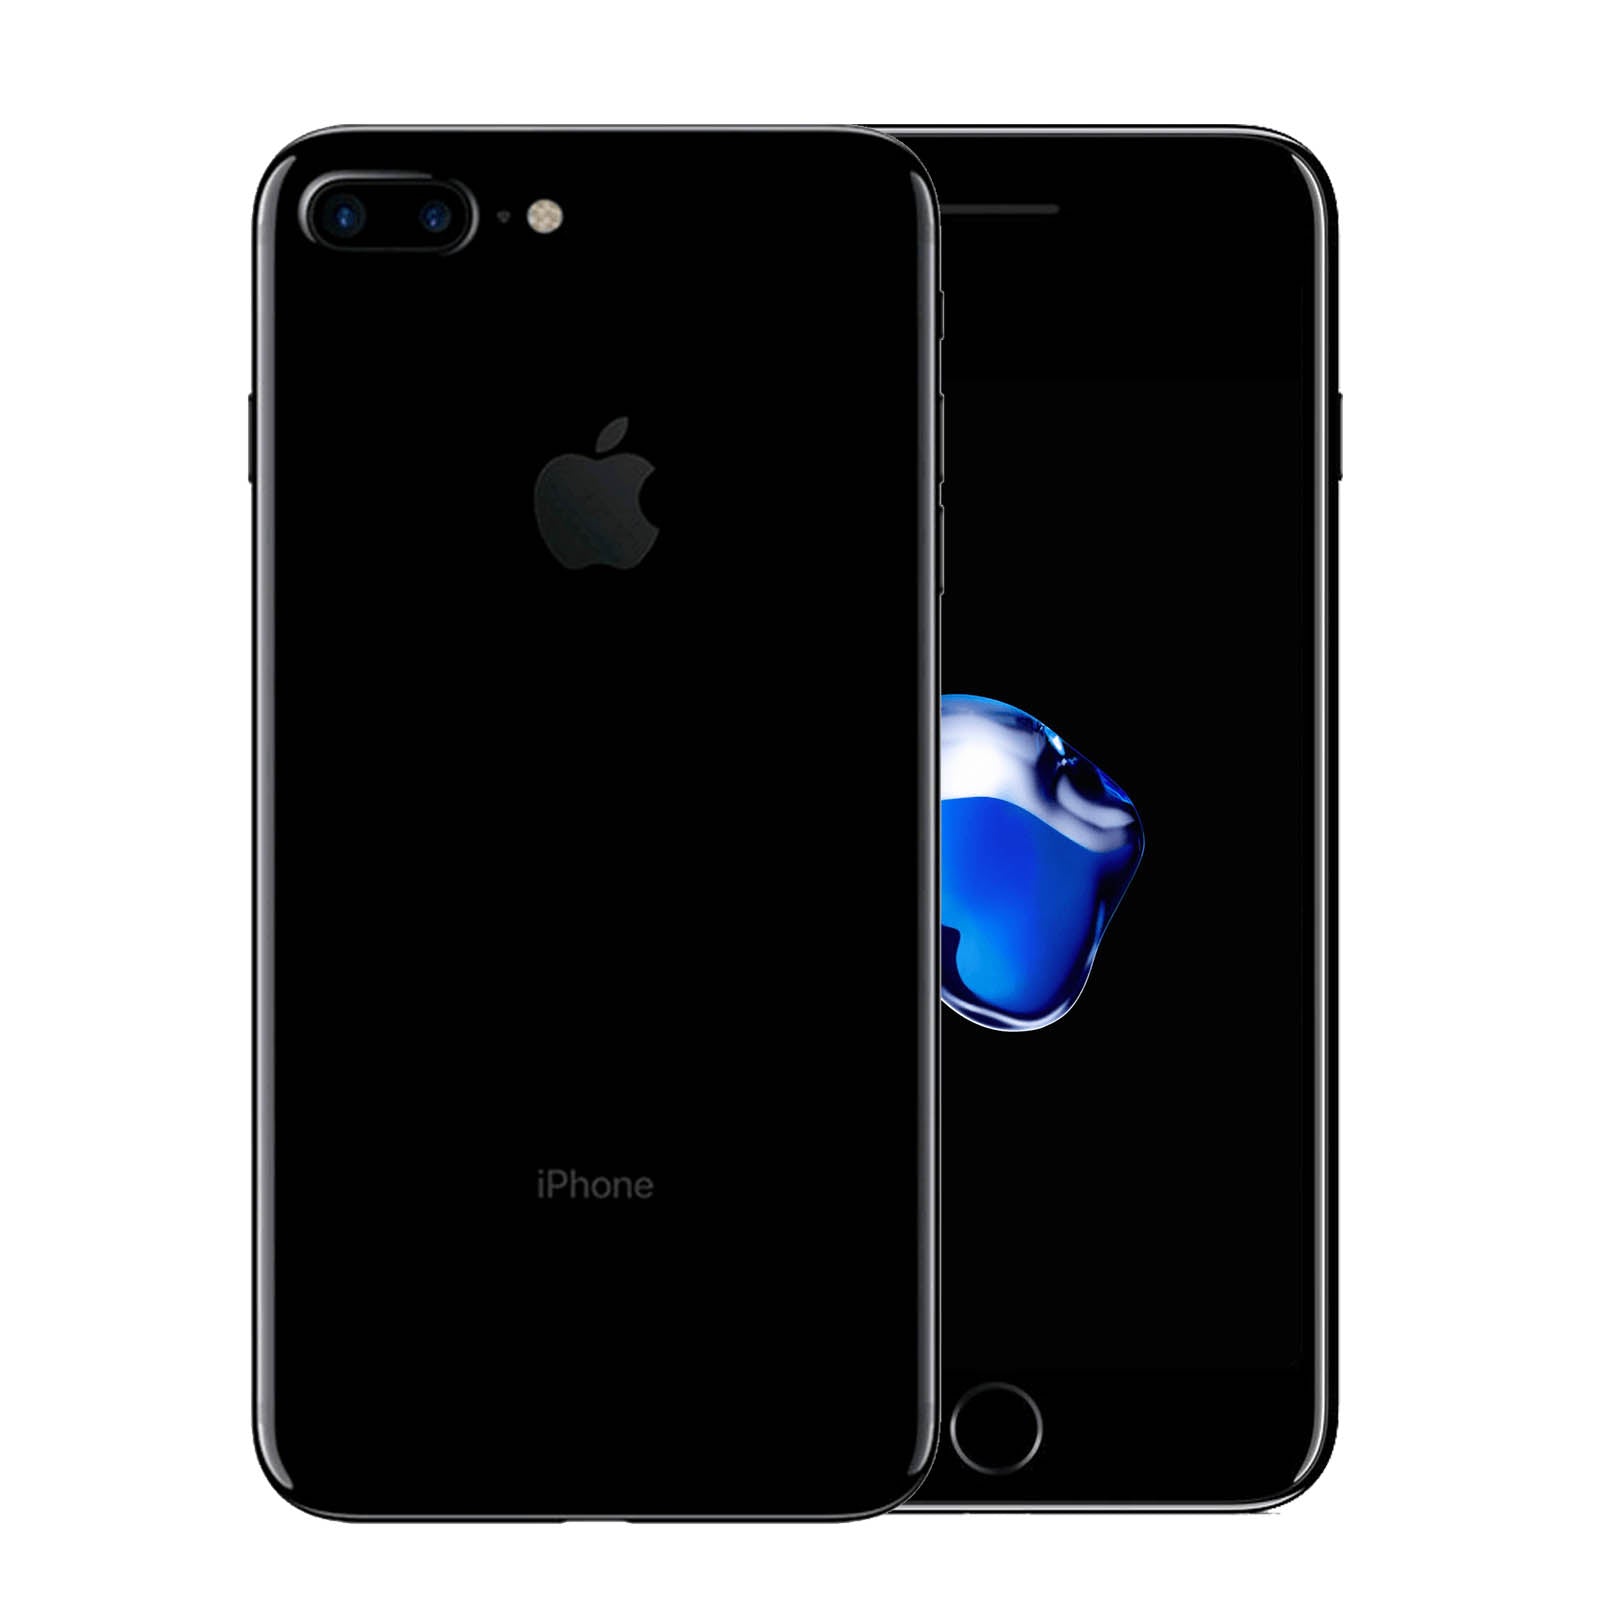 Apple iPhone 7 Plus 32GB Jet Black Good - Unlocked